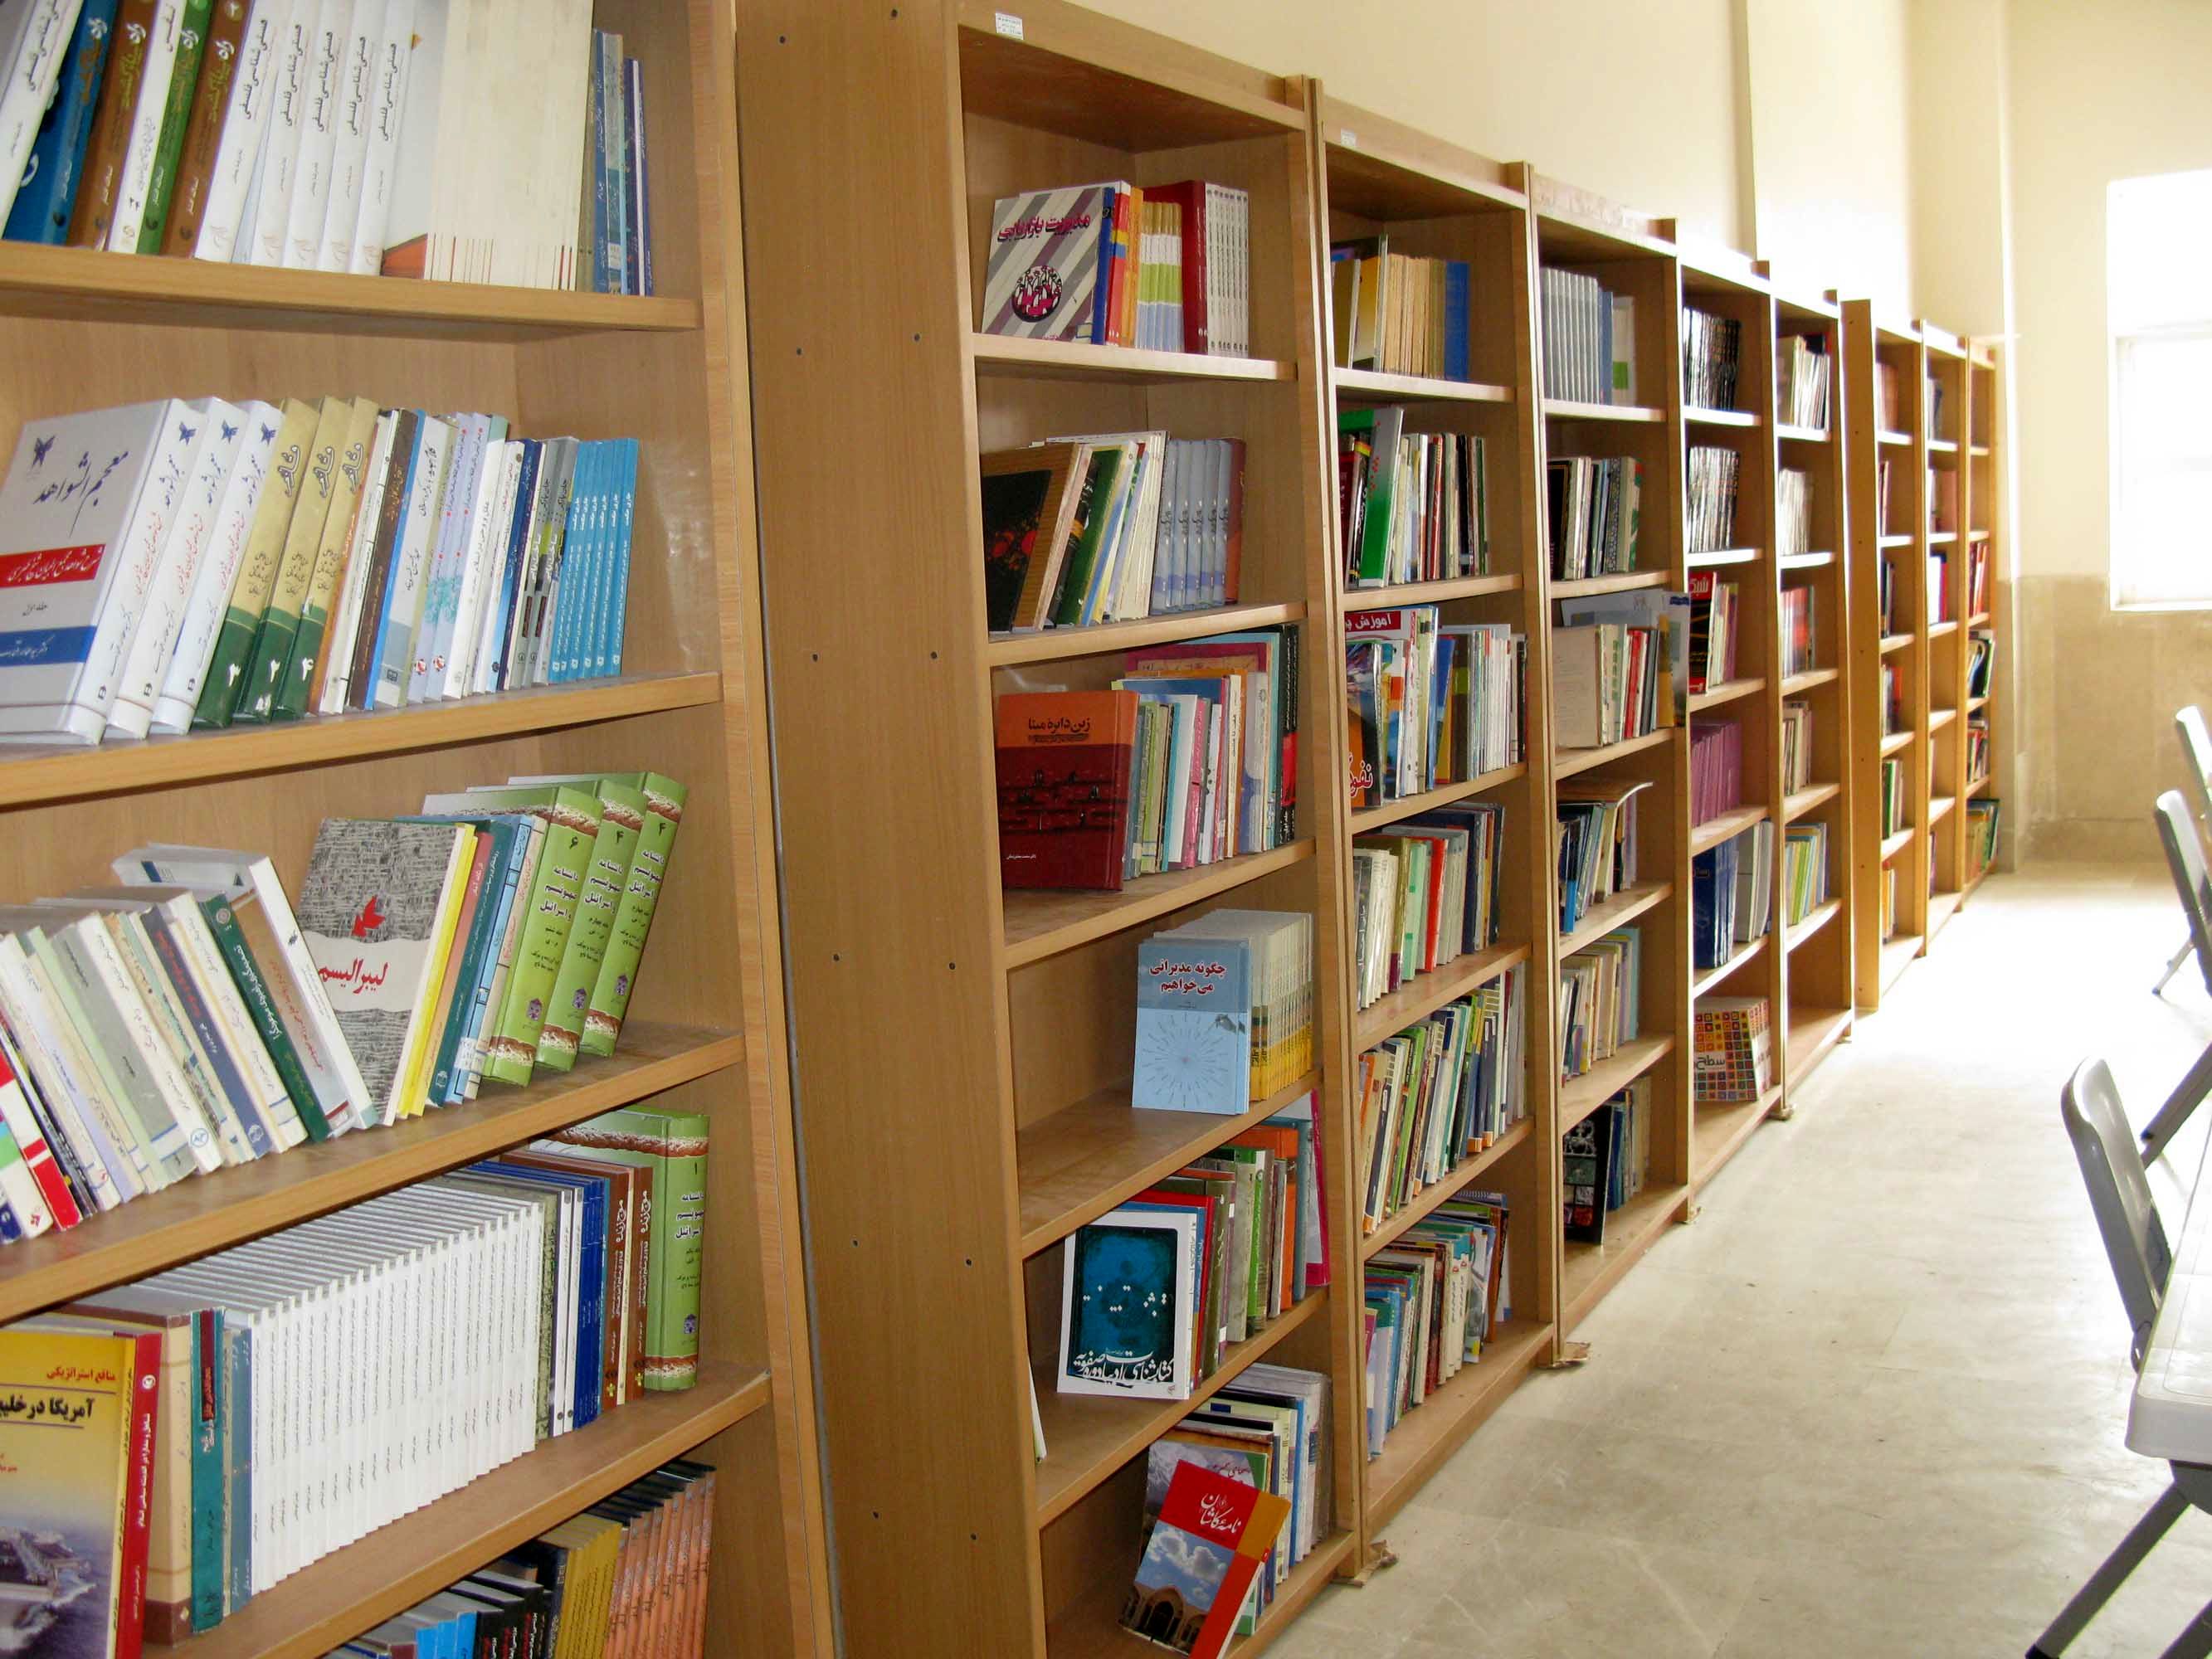 مرکز اطلاعات علمی جهاد دانشگاهی در کنسرسیوم محتوای ملی عضو می شود